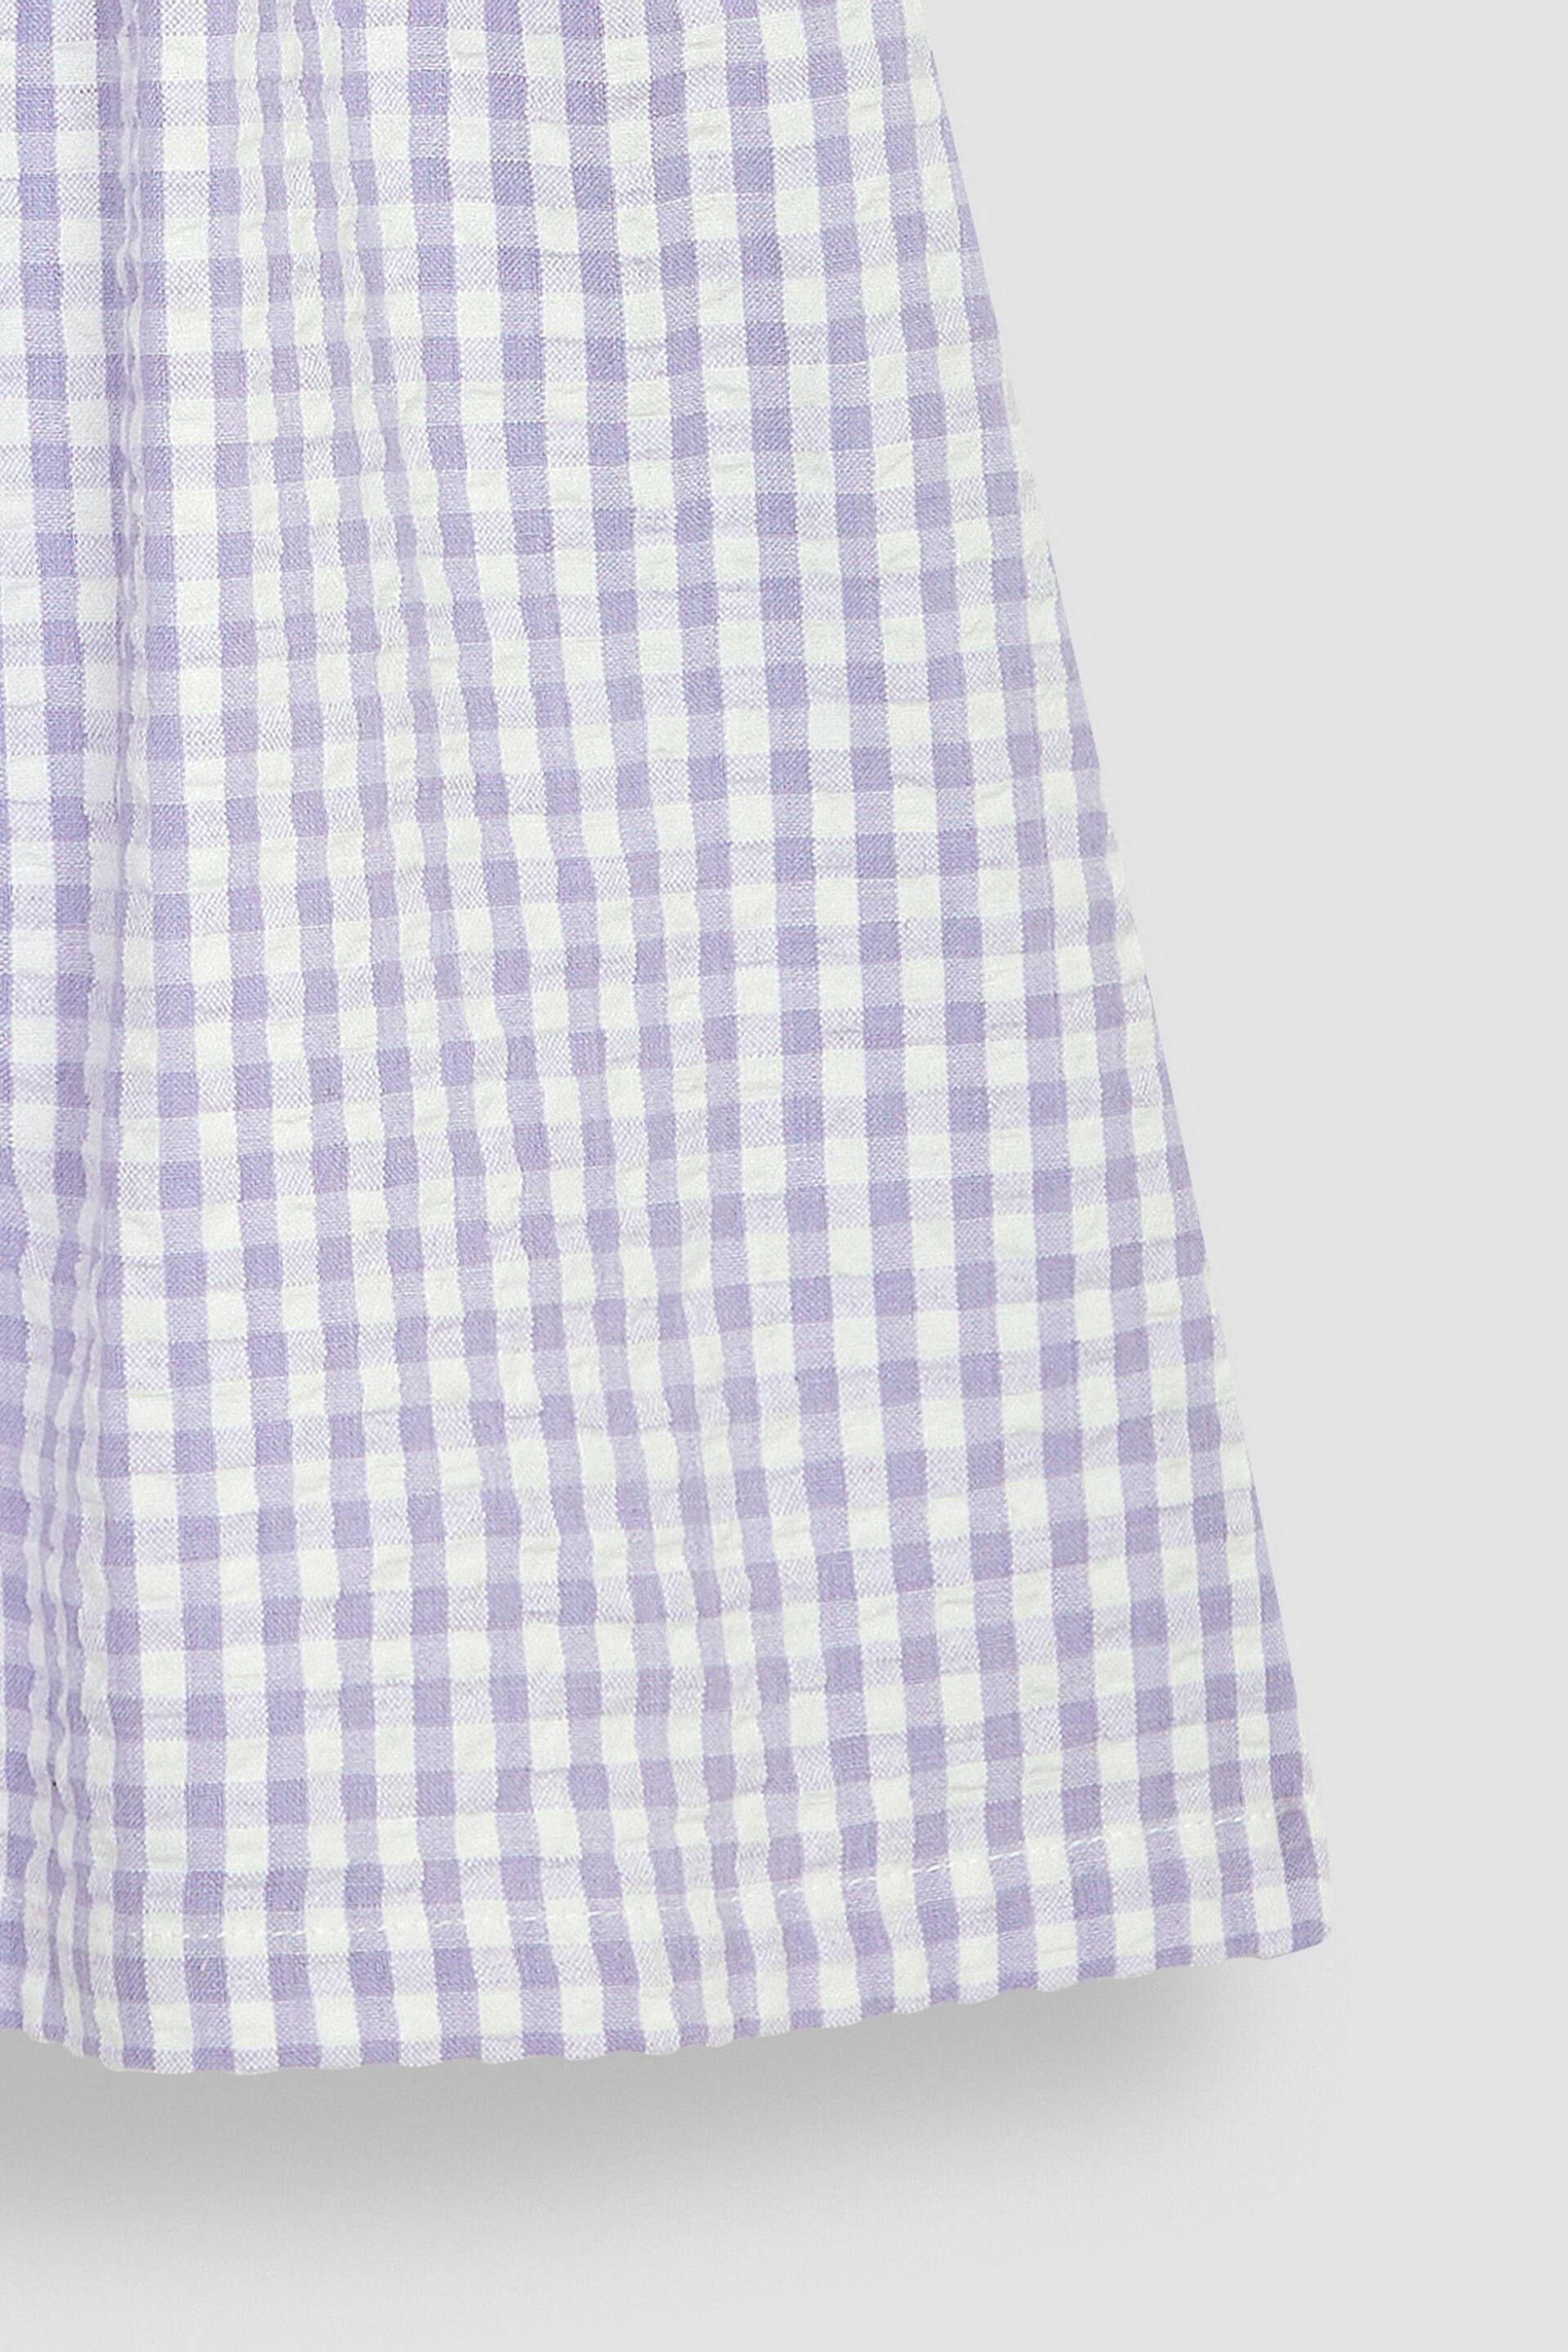 JoJo Maman Bébé Lilac Purple Gingham Button Front Collar Tea Dress - Image 3 of 3